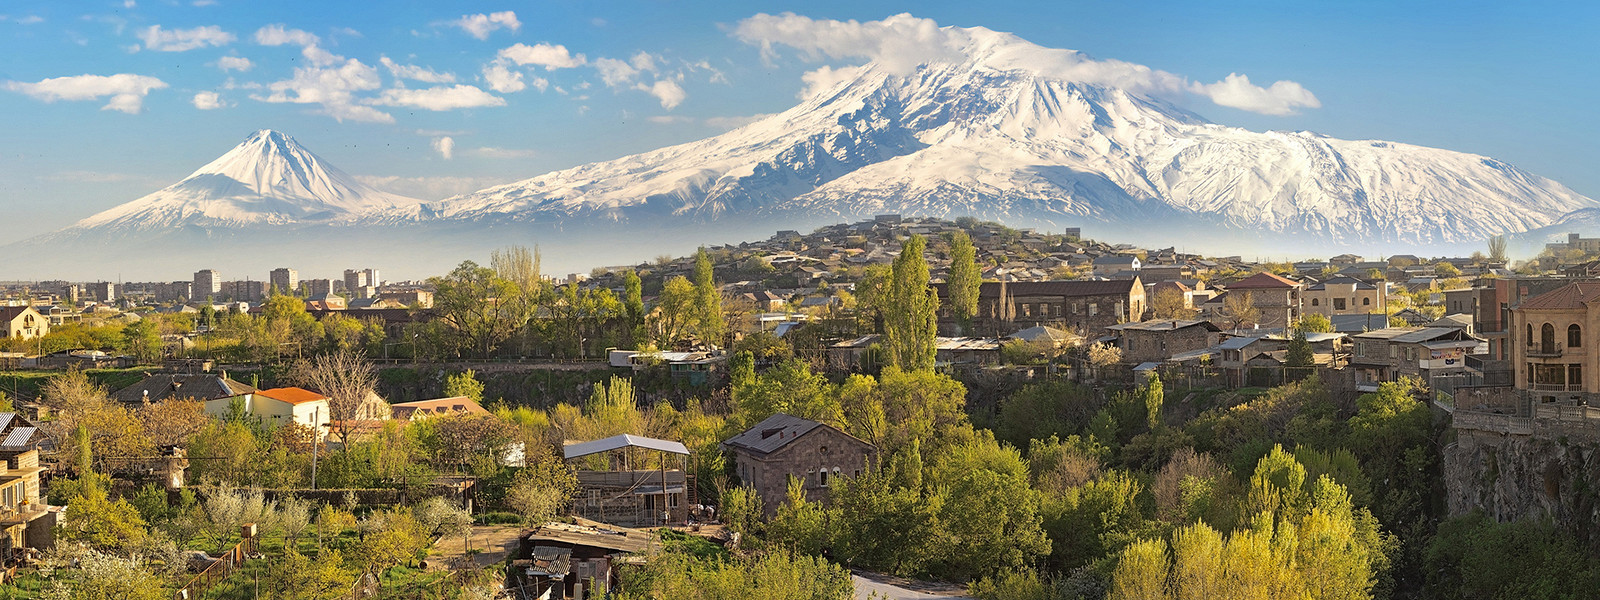 5 примечательных мест вокруг Еревана, куда можно выбраться на день